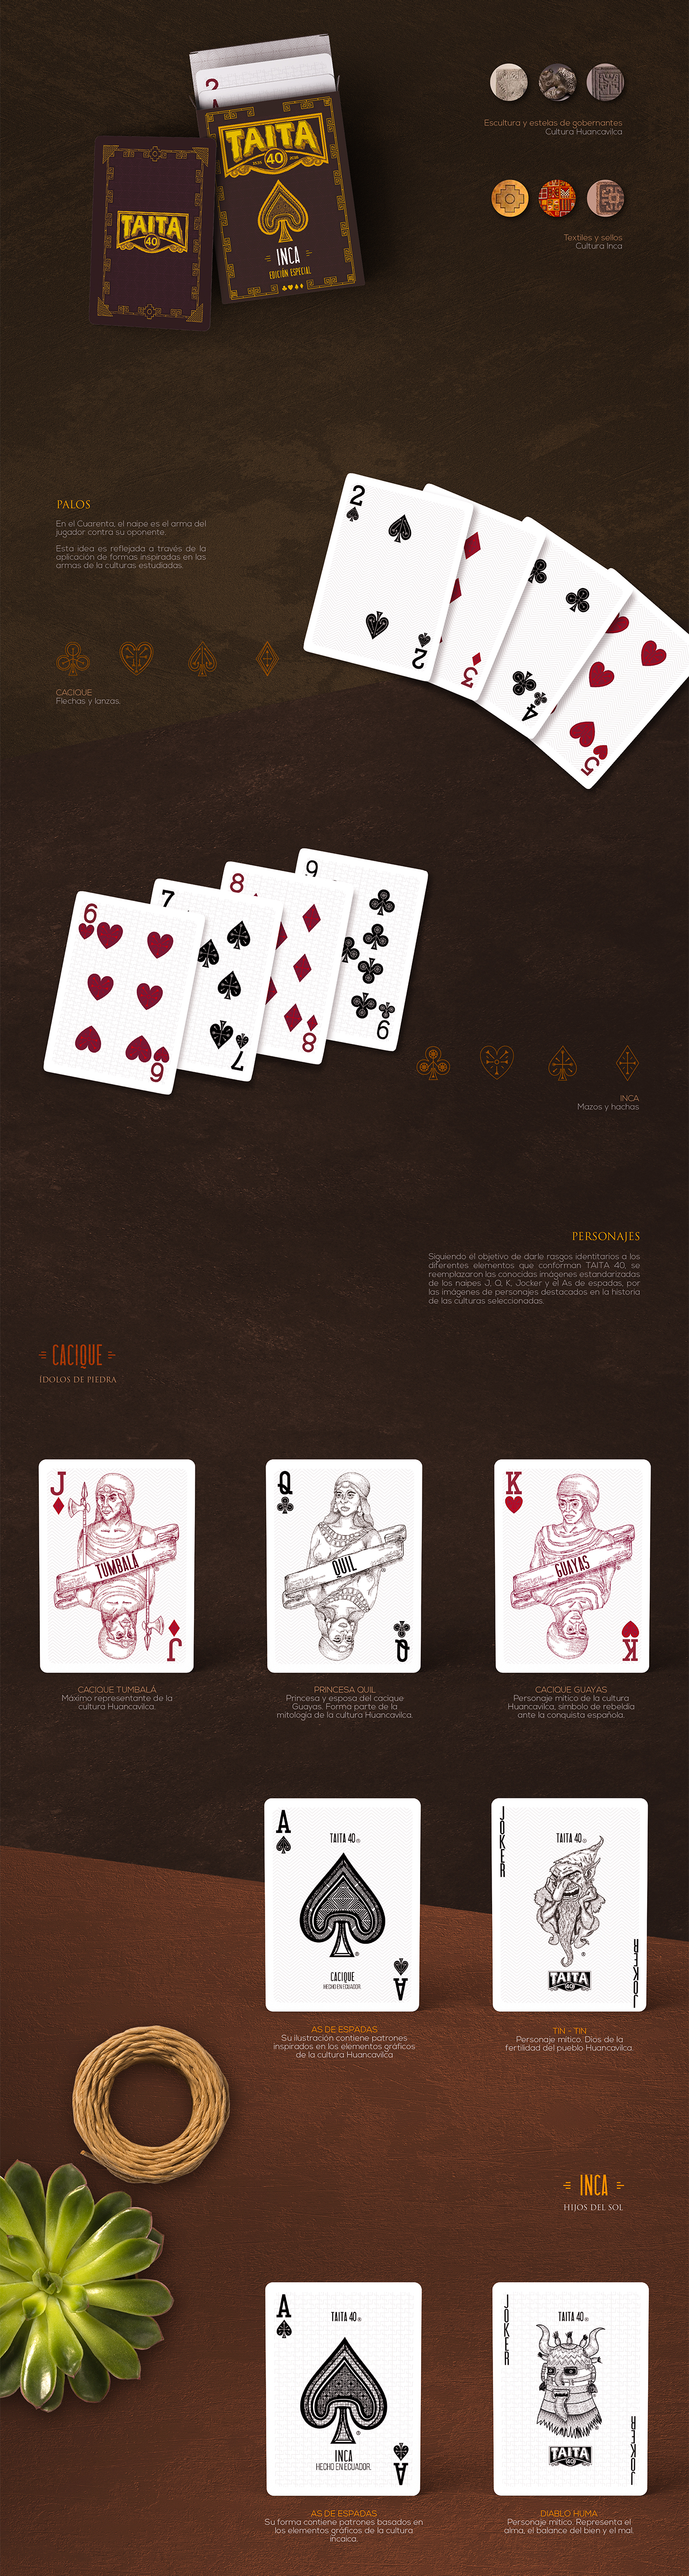 inca Huancavilca precolombino diseño gráfico ilustracion empaque Packaging cuarenta Playing Cards Ecuador